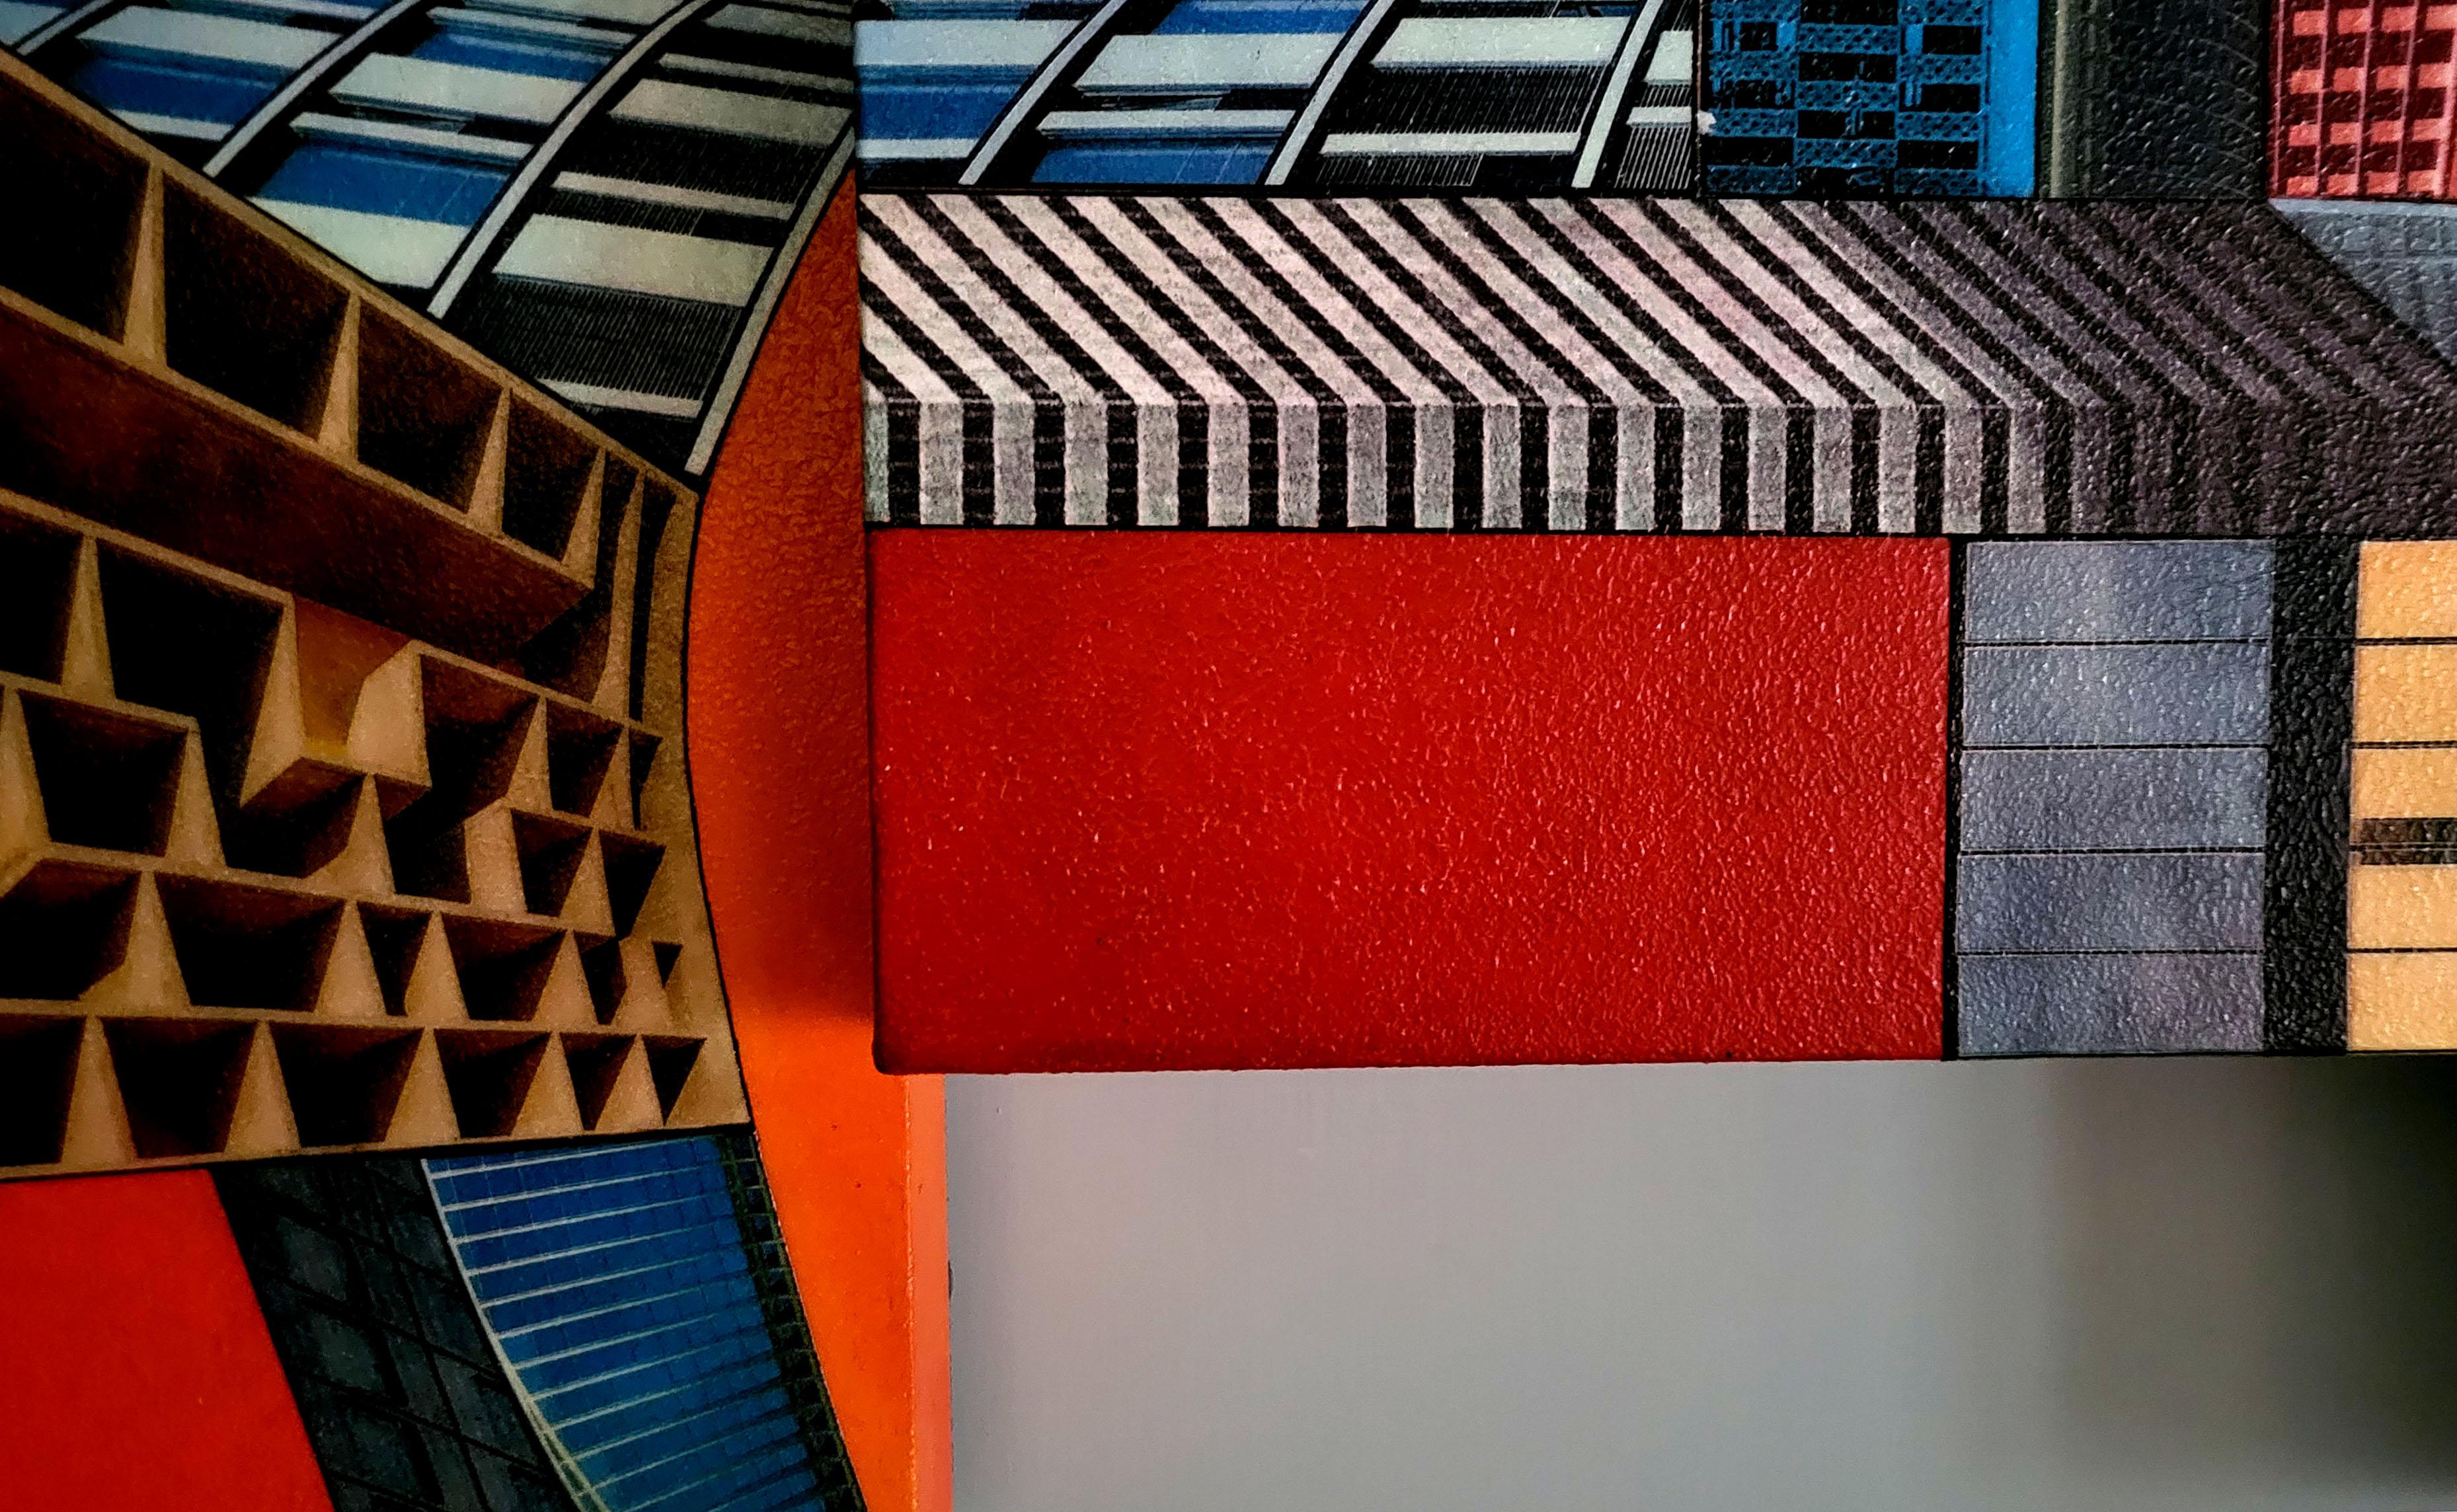 Cyberurban 3D (L3). Futuristisches farbenfrohes abstraktes konstruktivistisches Gemälde
Acrylfarbe, Mischtechnik auf Leinwand und Holzplatte. 2021
Abmessungen in cm: 98 x 120 x 8 cm. 
In Zoll: 38,58